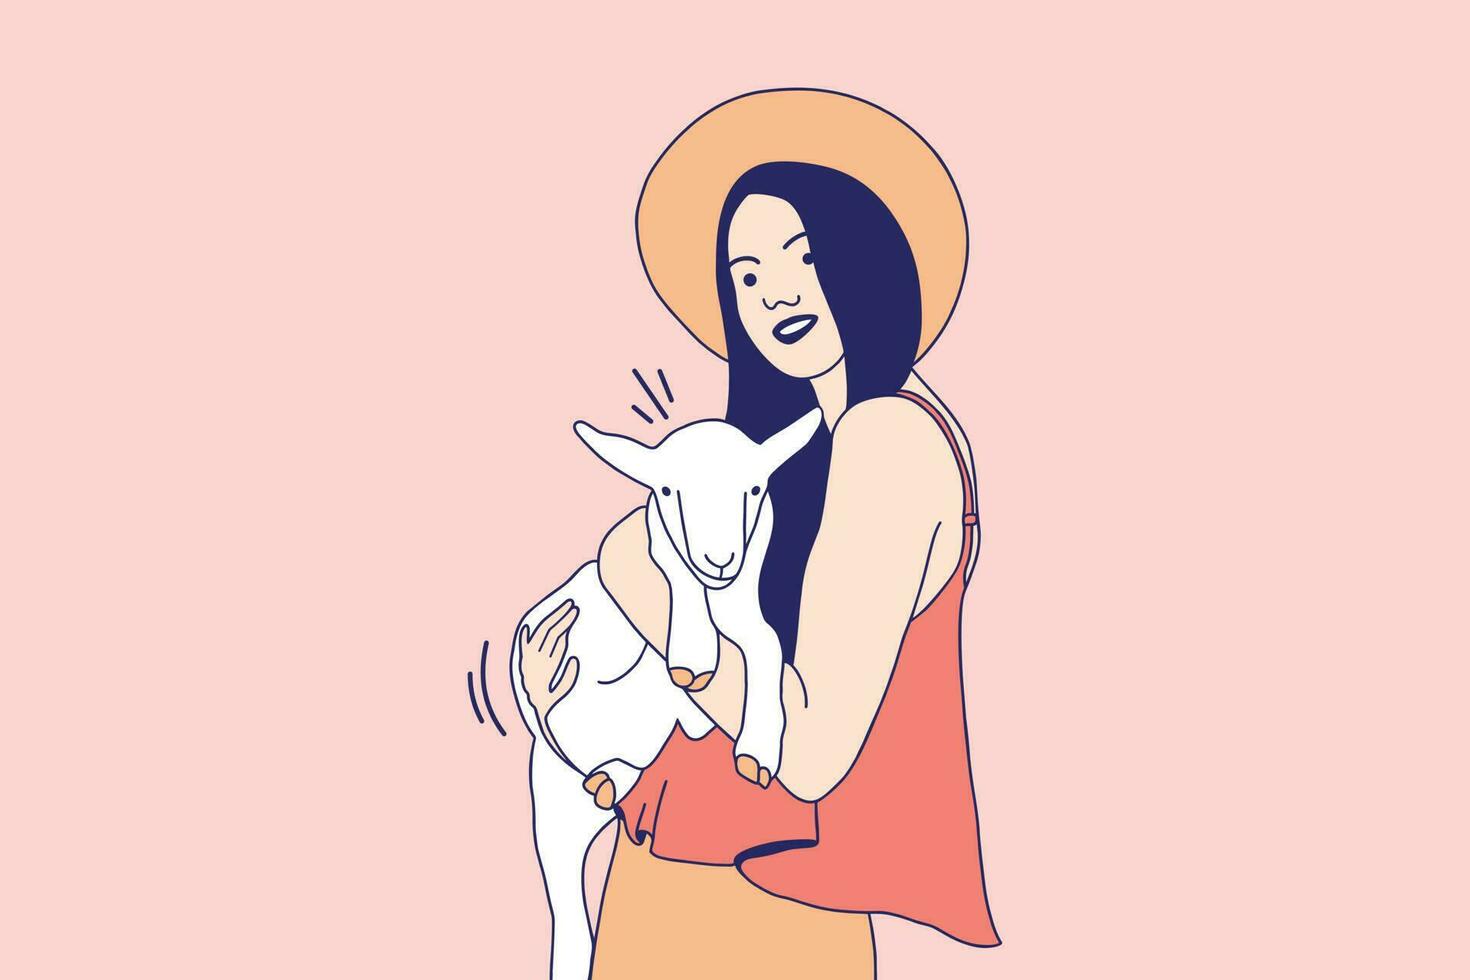 illustraties mooi vrouw boer holdng een baby geit vector